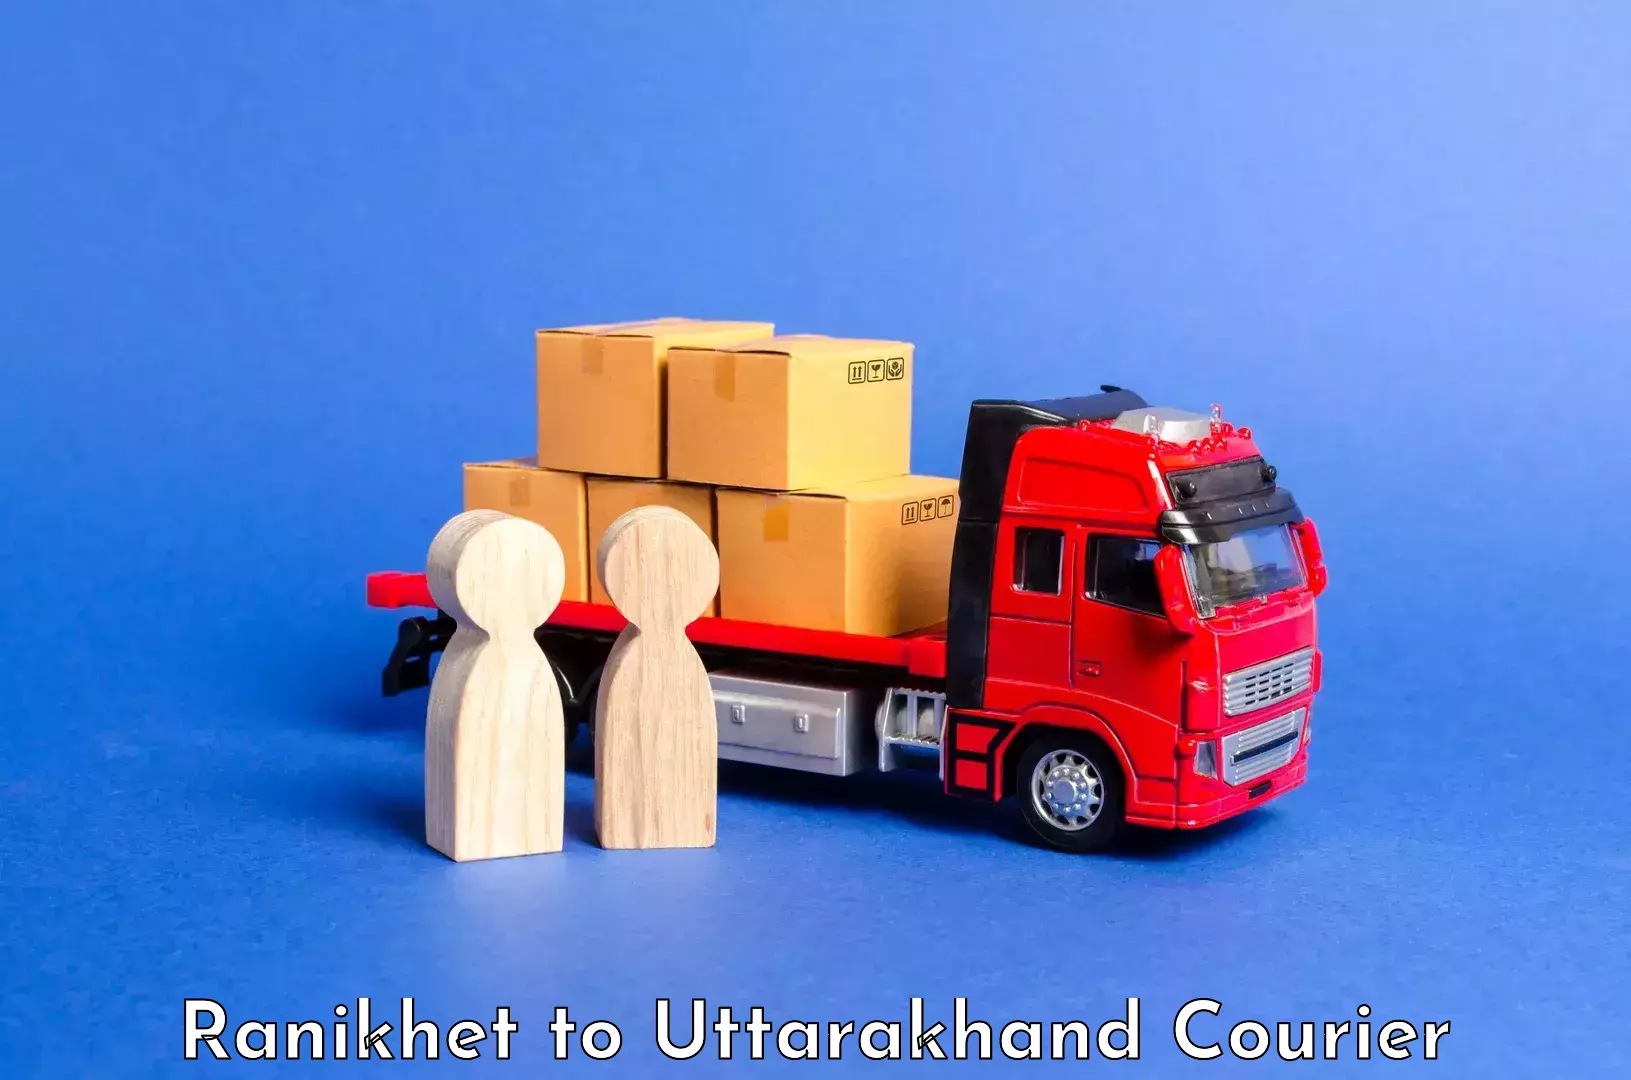 Luggage shipment specialists Ranikhet to Uttarakhand